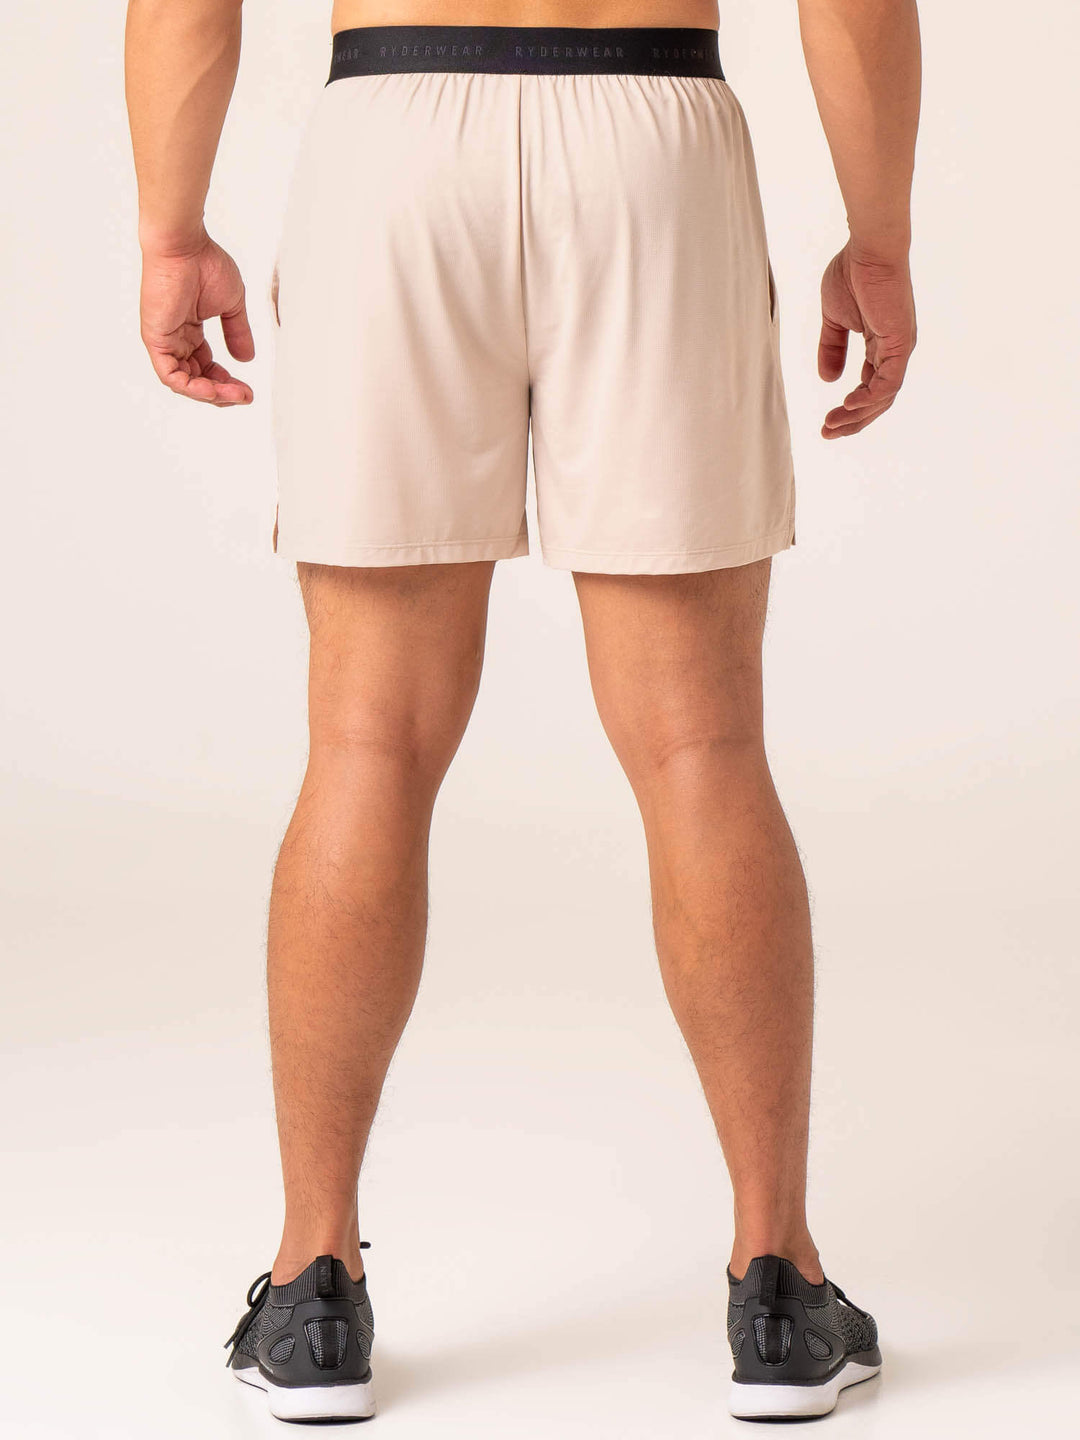 Terrain Mesh Gym Shorts - Chalk Clothing Ryderwear 